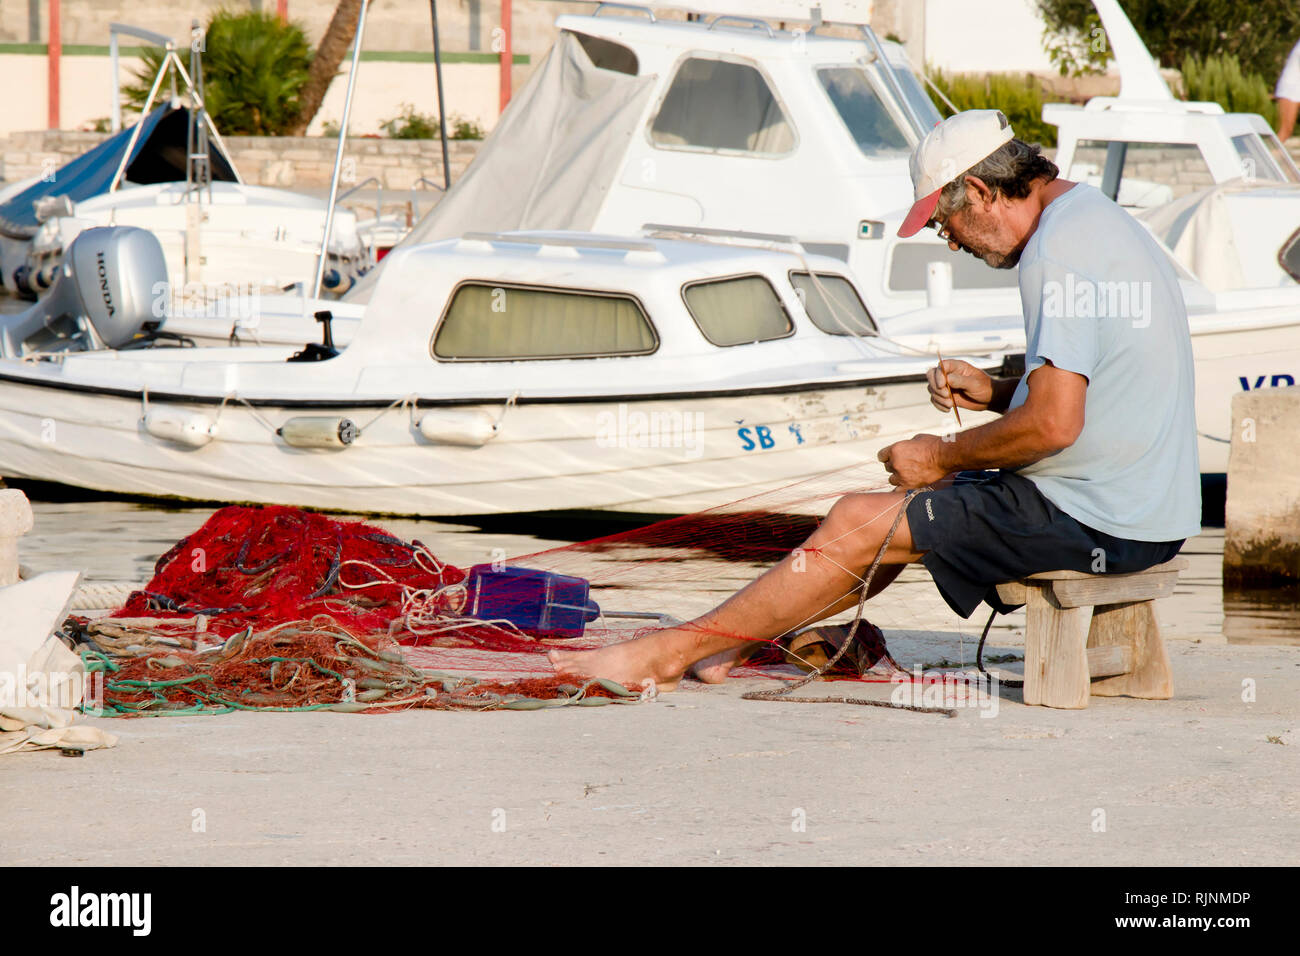 Insel Prvic, Kroatien - 23. August 2018: Fischer Instandsetzung seiner Fischernetz auf Pier mit Booten im Hintergrund Stockfoto